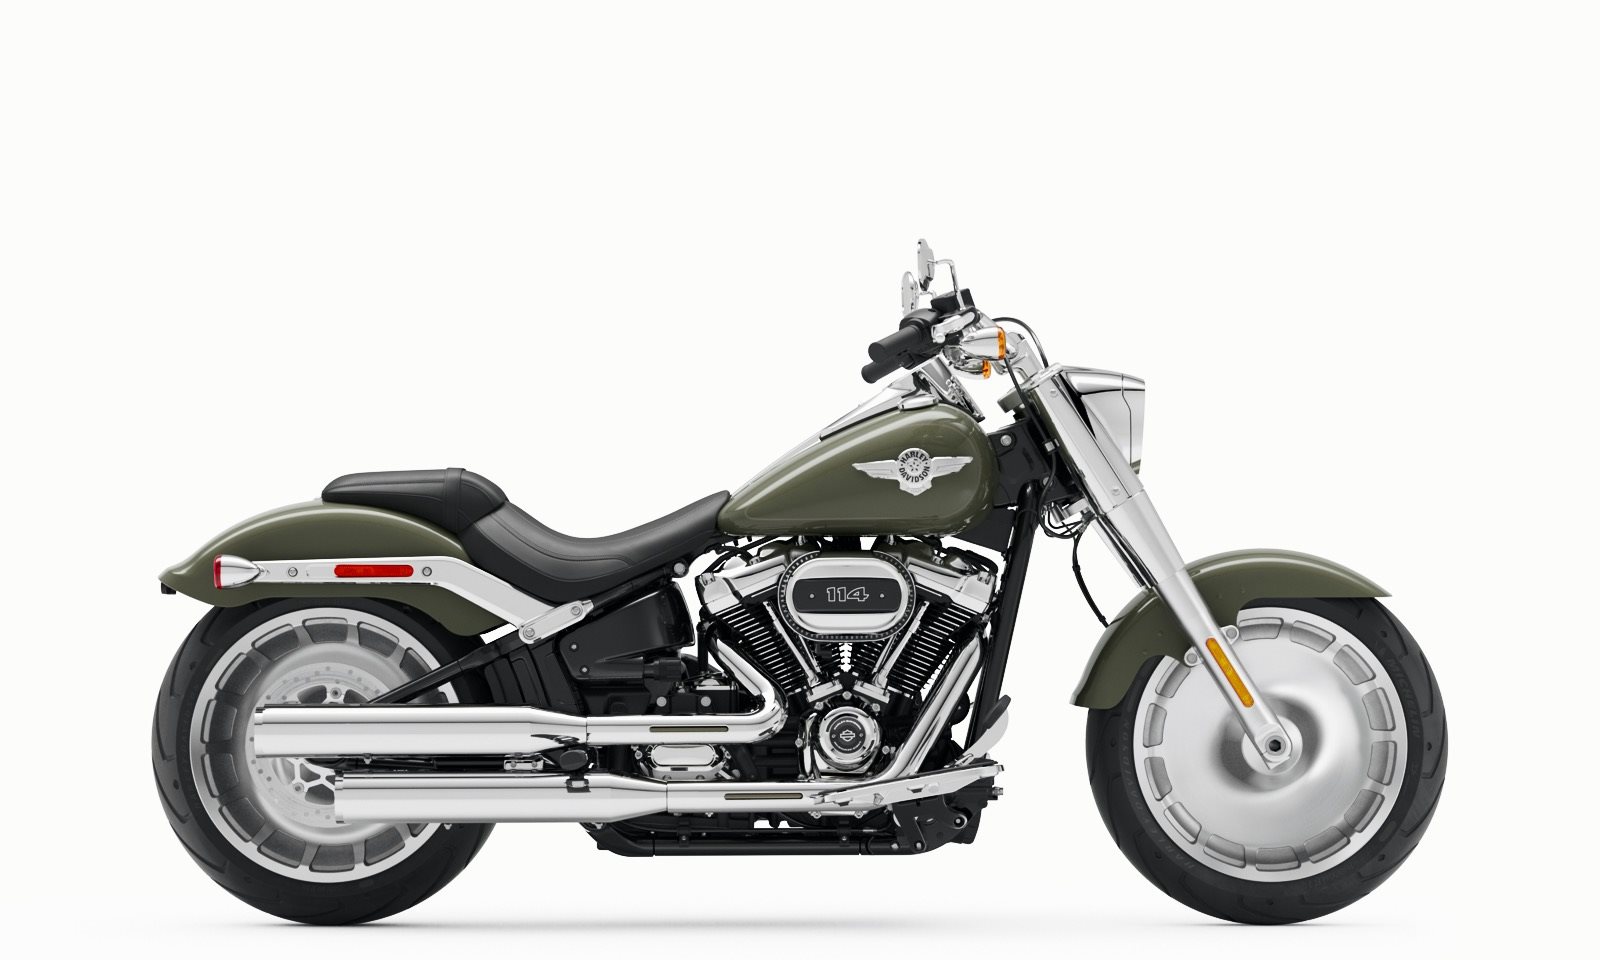 Motorrad Vergleich Harley Davidson Softail Fat Boy 114 Flfbs 2021 Vs Bmw R 1250 Rt 2020